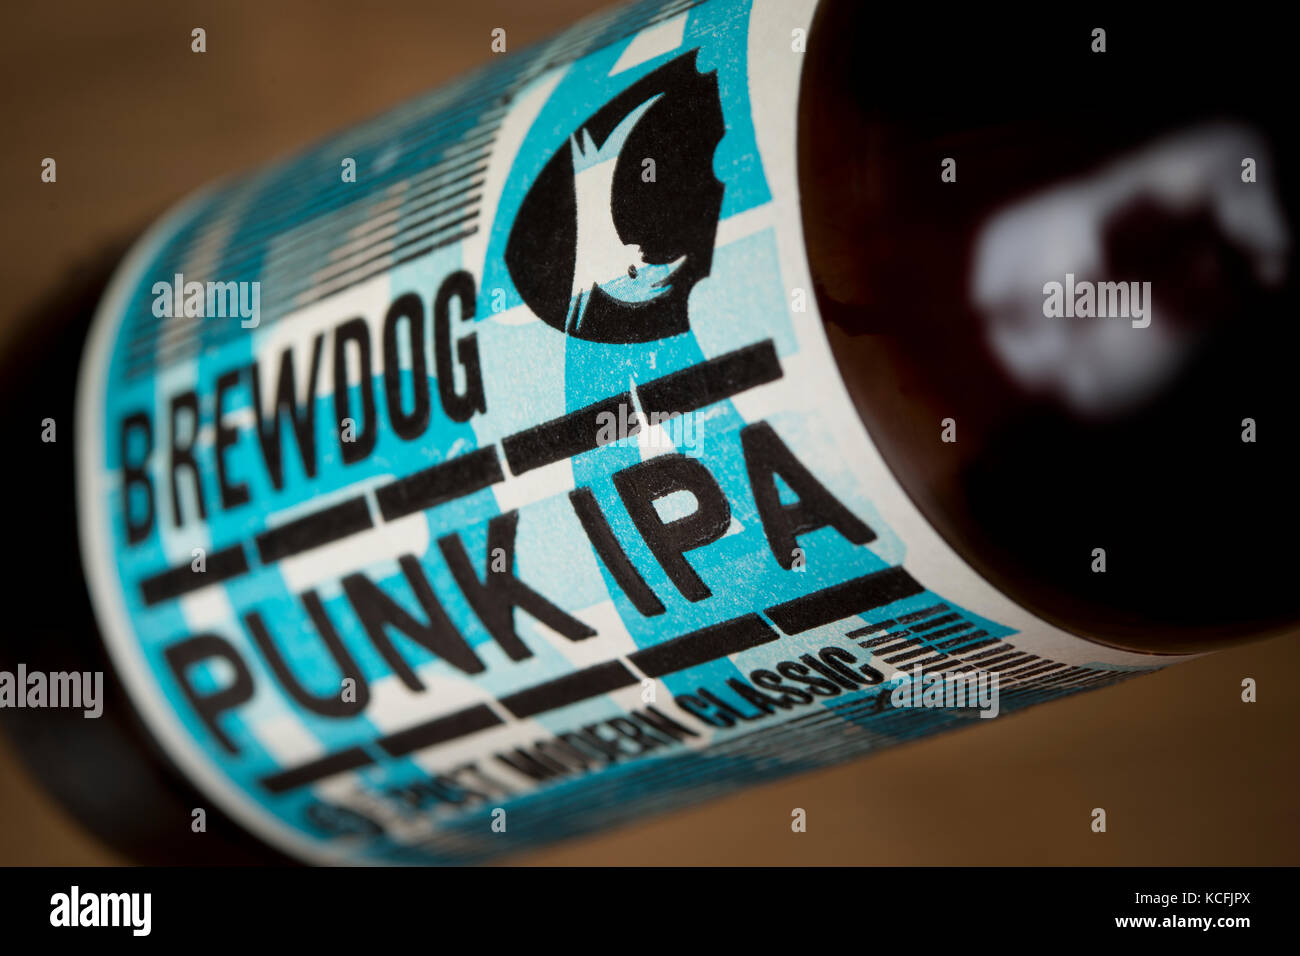 Una chiusura di una bottiglia di Punk IPA prodotta da Scottish basato brewery BrewDog (solo uso editoriale). Foto Stock